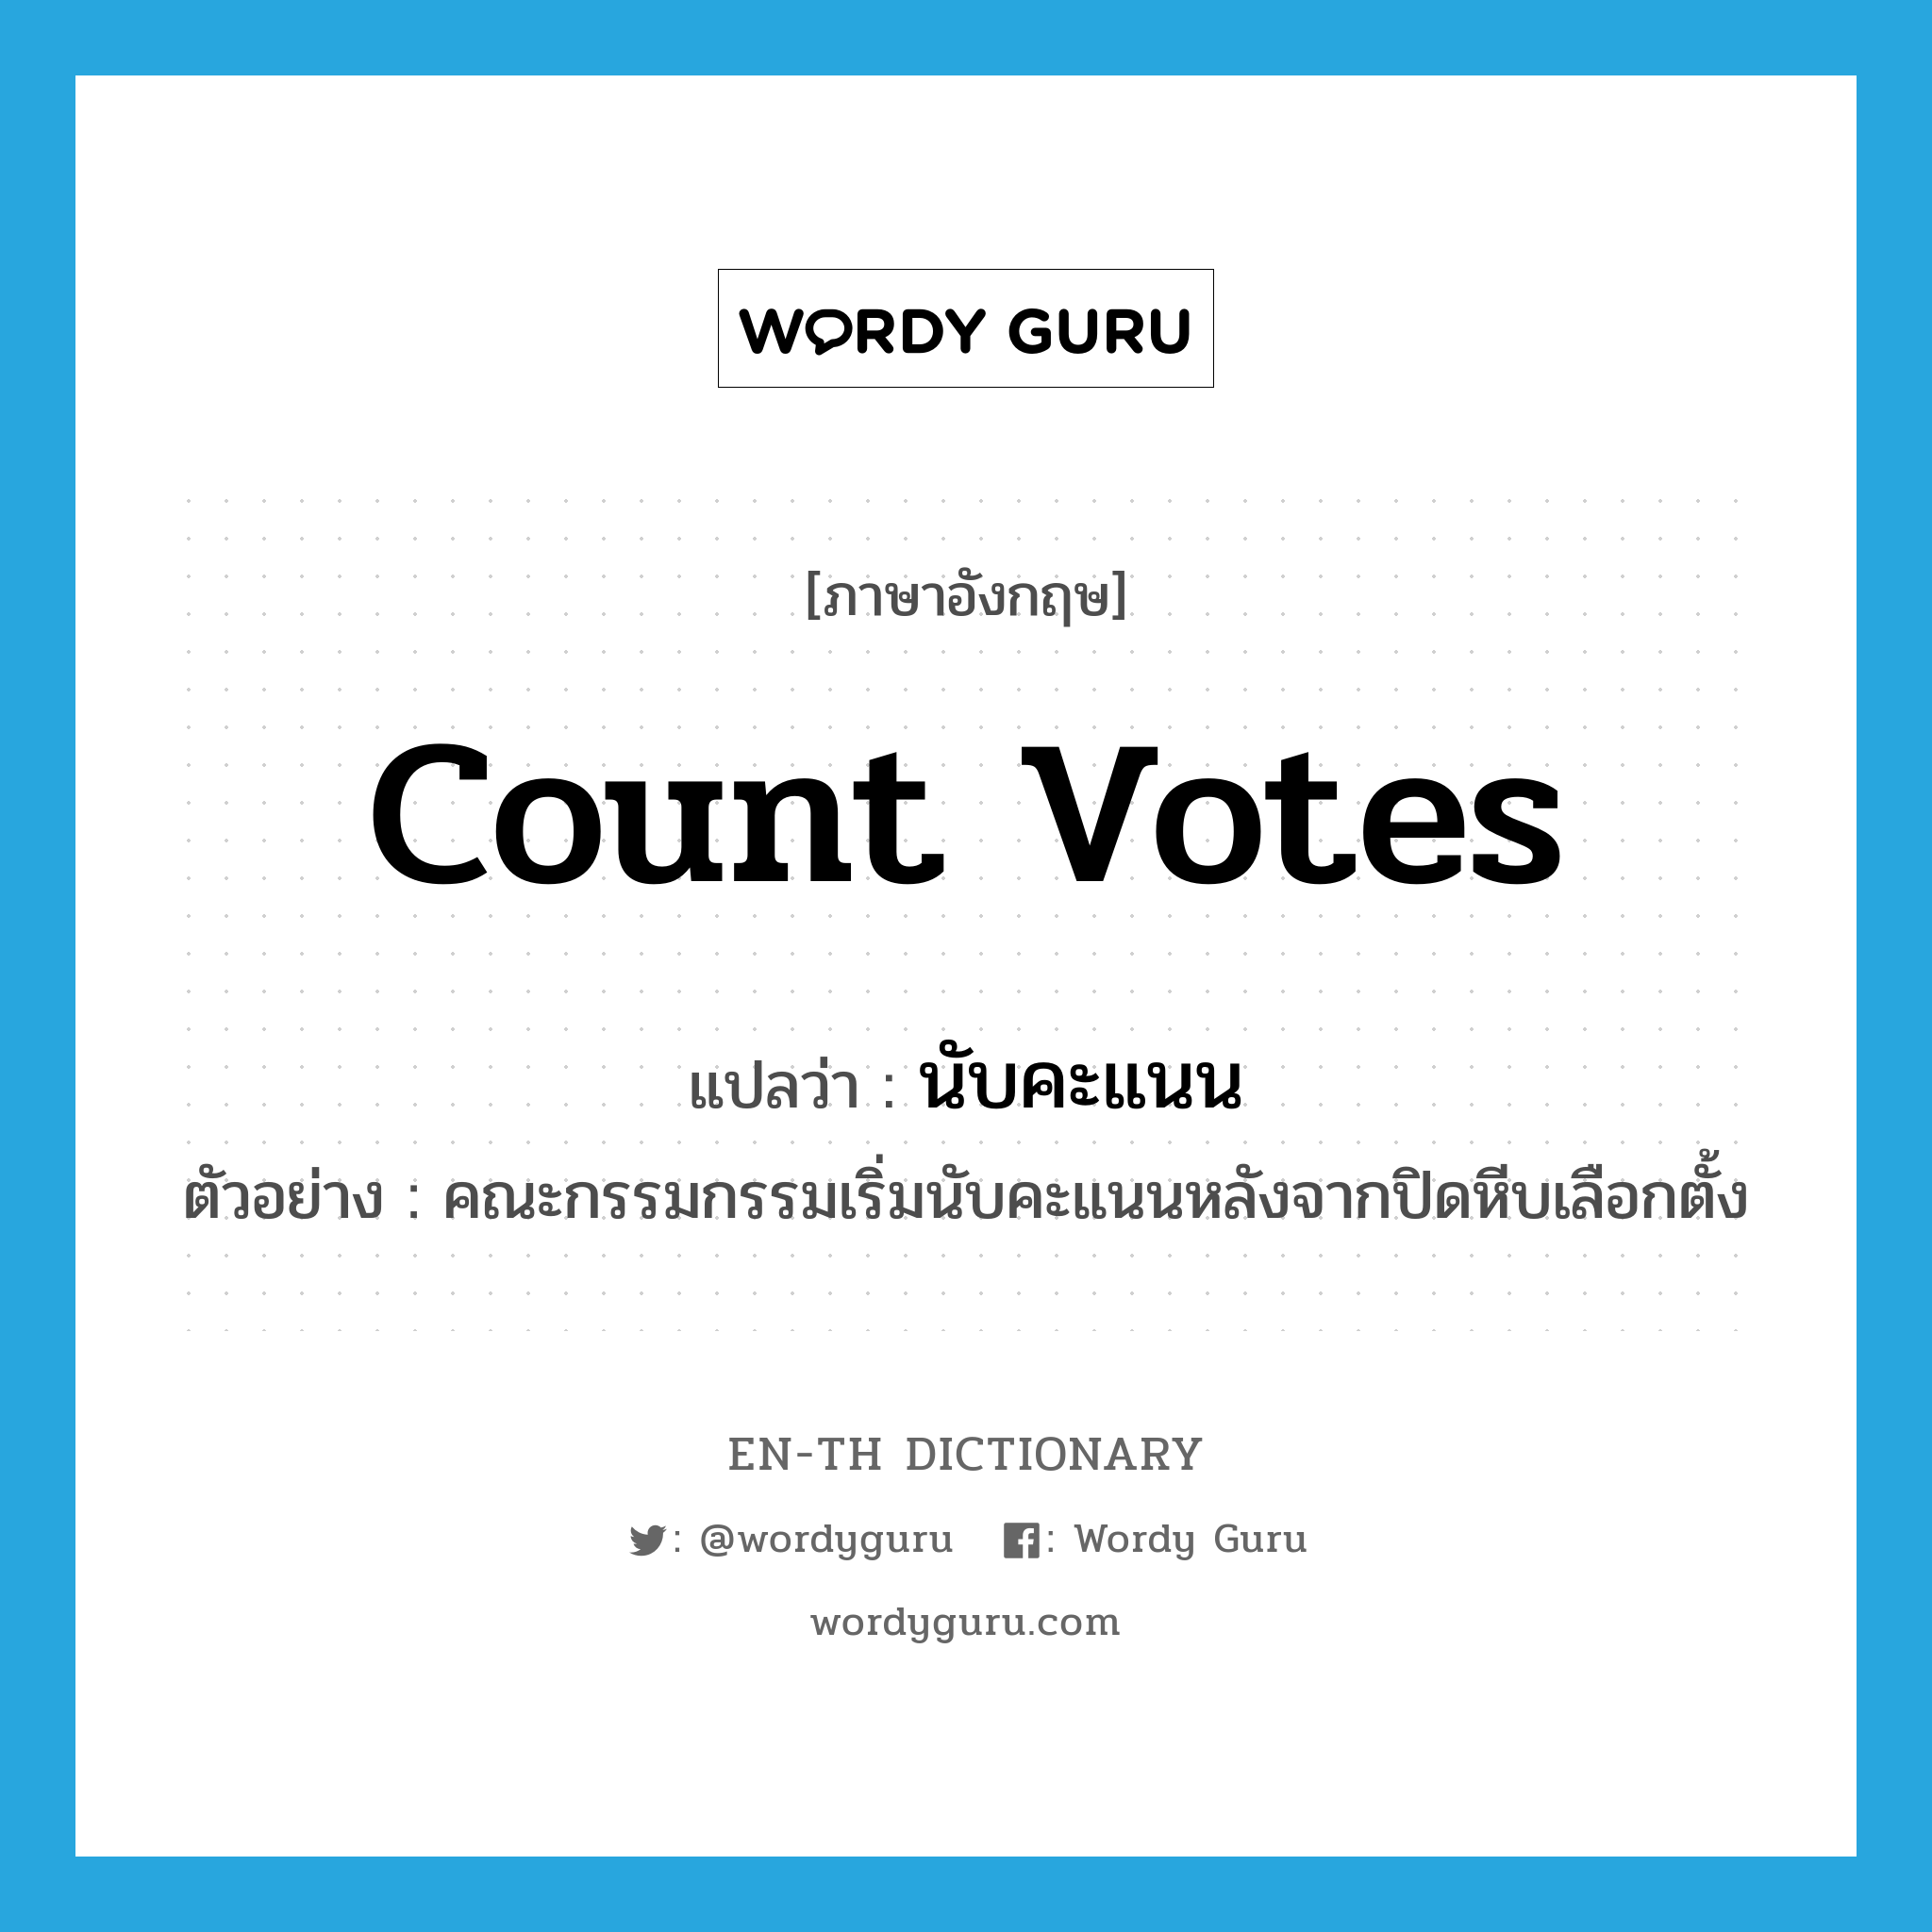 count votes แปลว่า?, คำศัพท์ภาษาอังกฤษ count votes แปลว่า นับคะแนน ประเภท V ตัวอย่าง คณะกรรมกรรมเริ่มนับคะแนนหลังจากปิดหีบเลือกตั้ง หมวด V